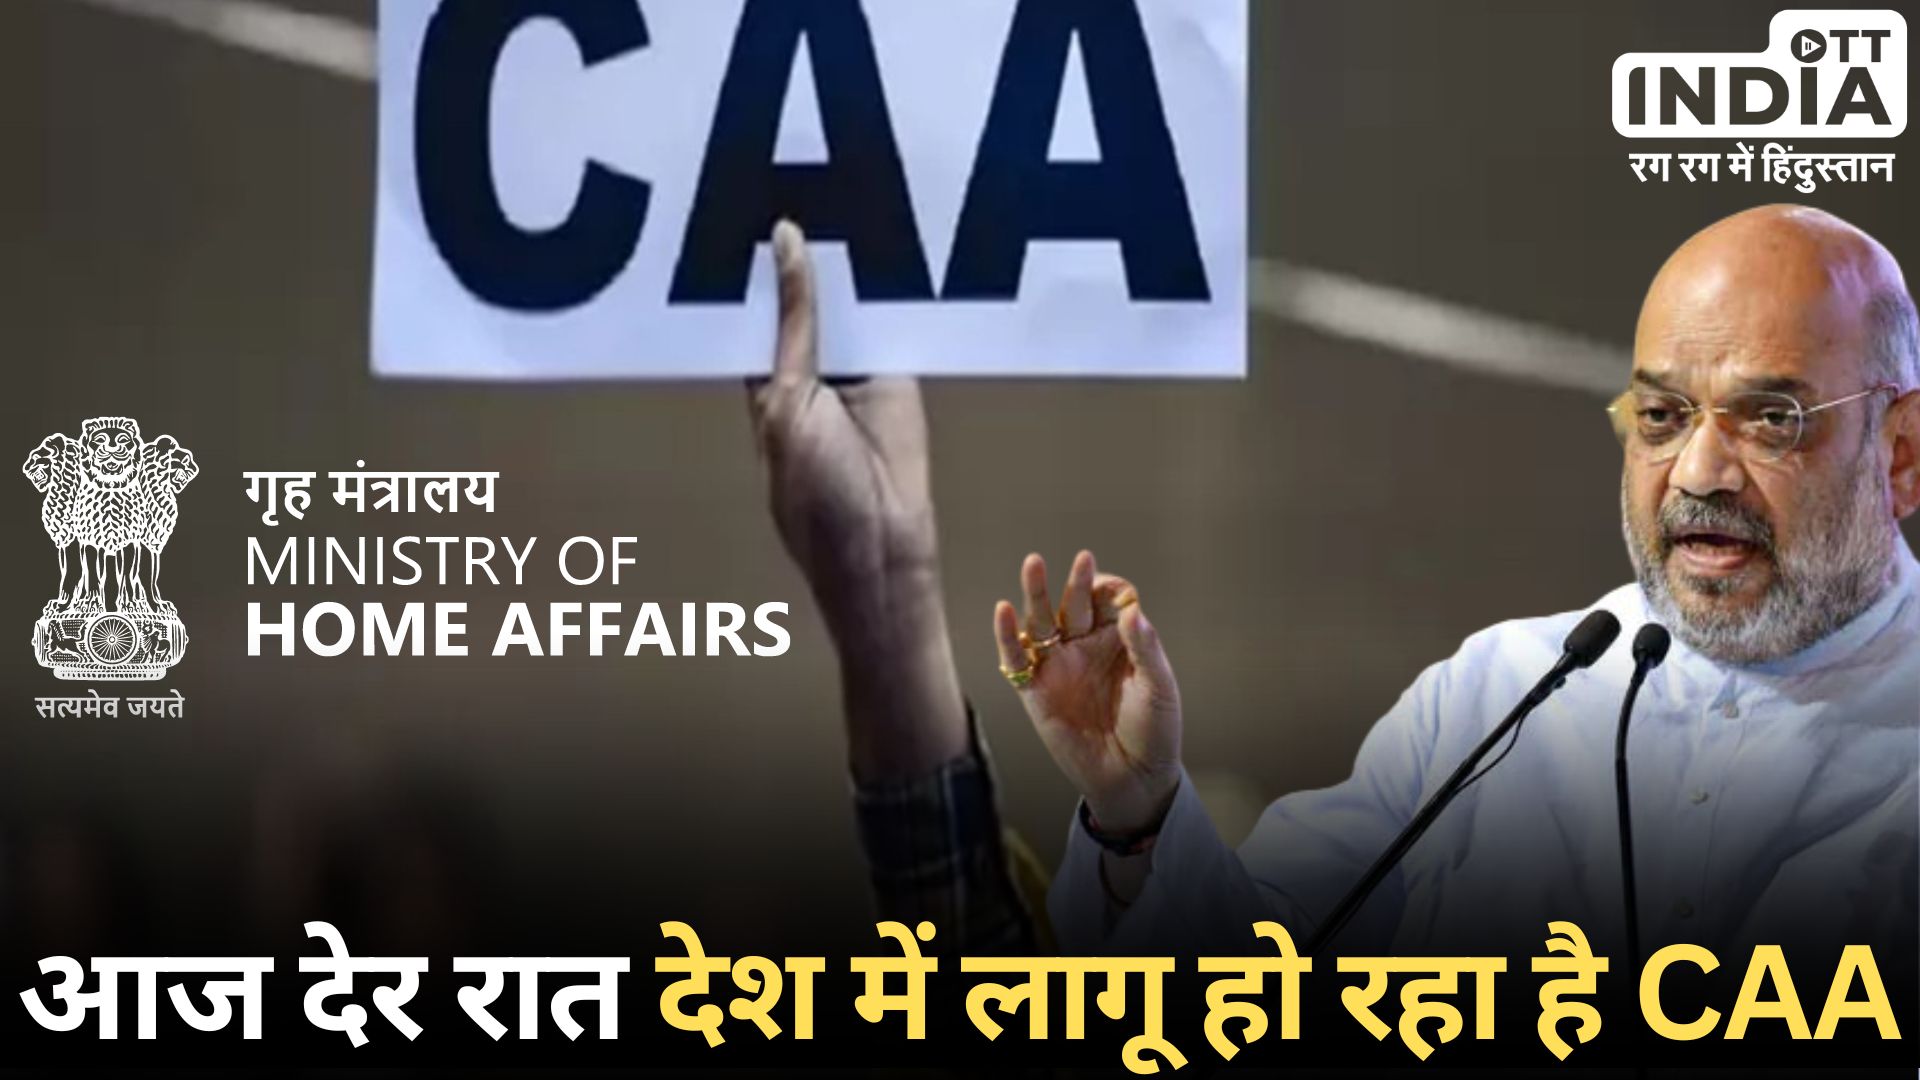 Home Ministry Announcement CAA: गृह मंत्रालय ने भारत में लागू किया CAA, विवादित कानून लोकसभा चुनाव से पहले लागू